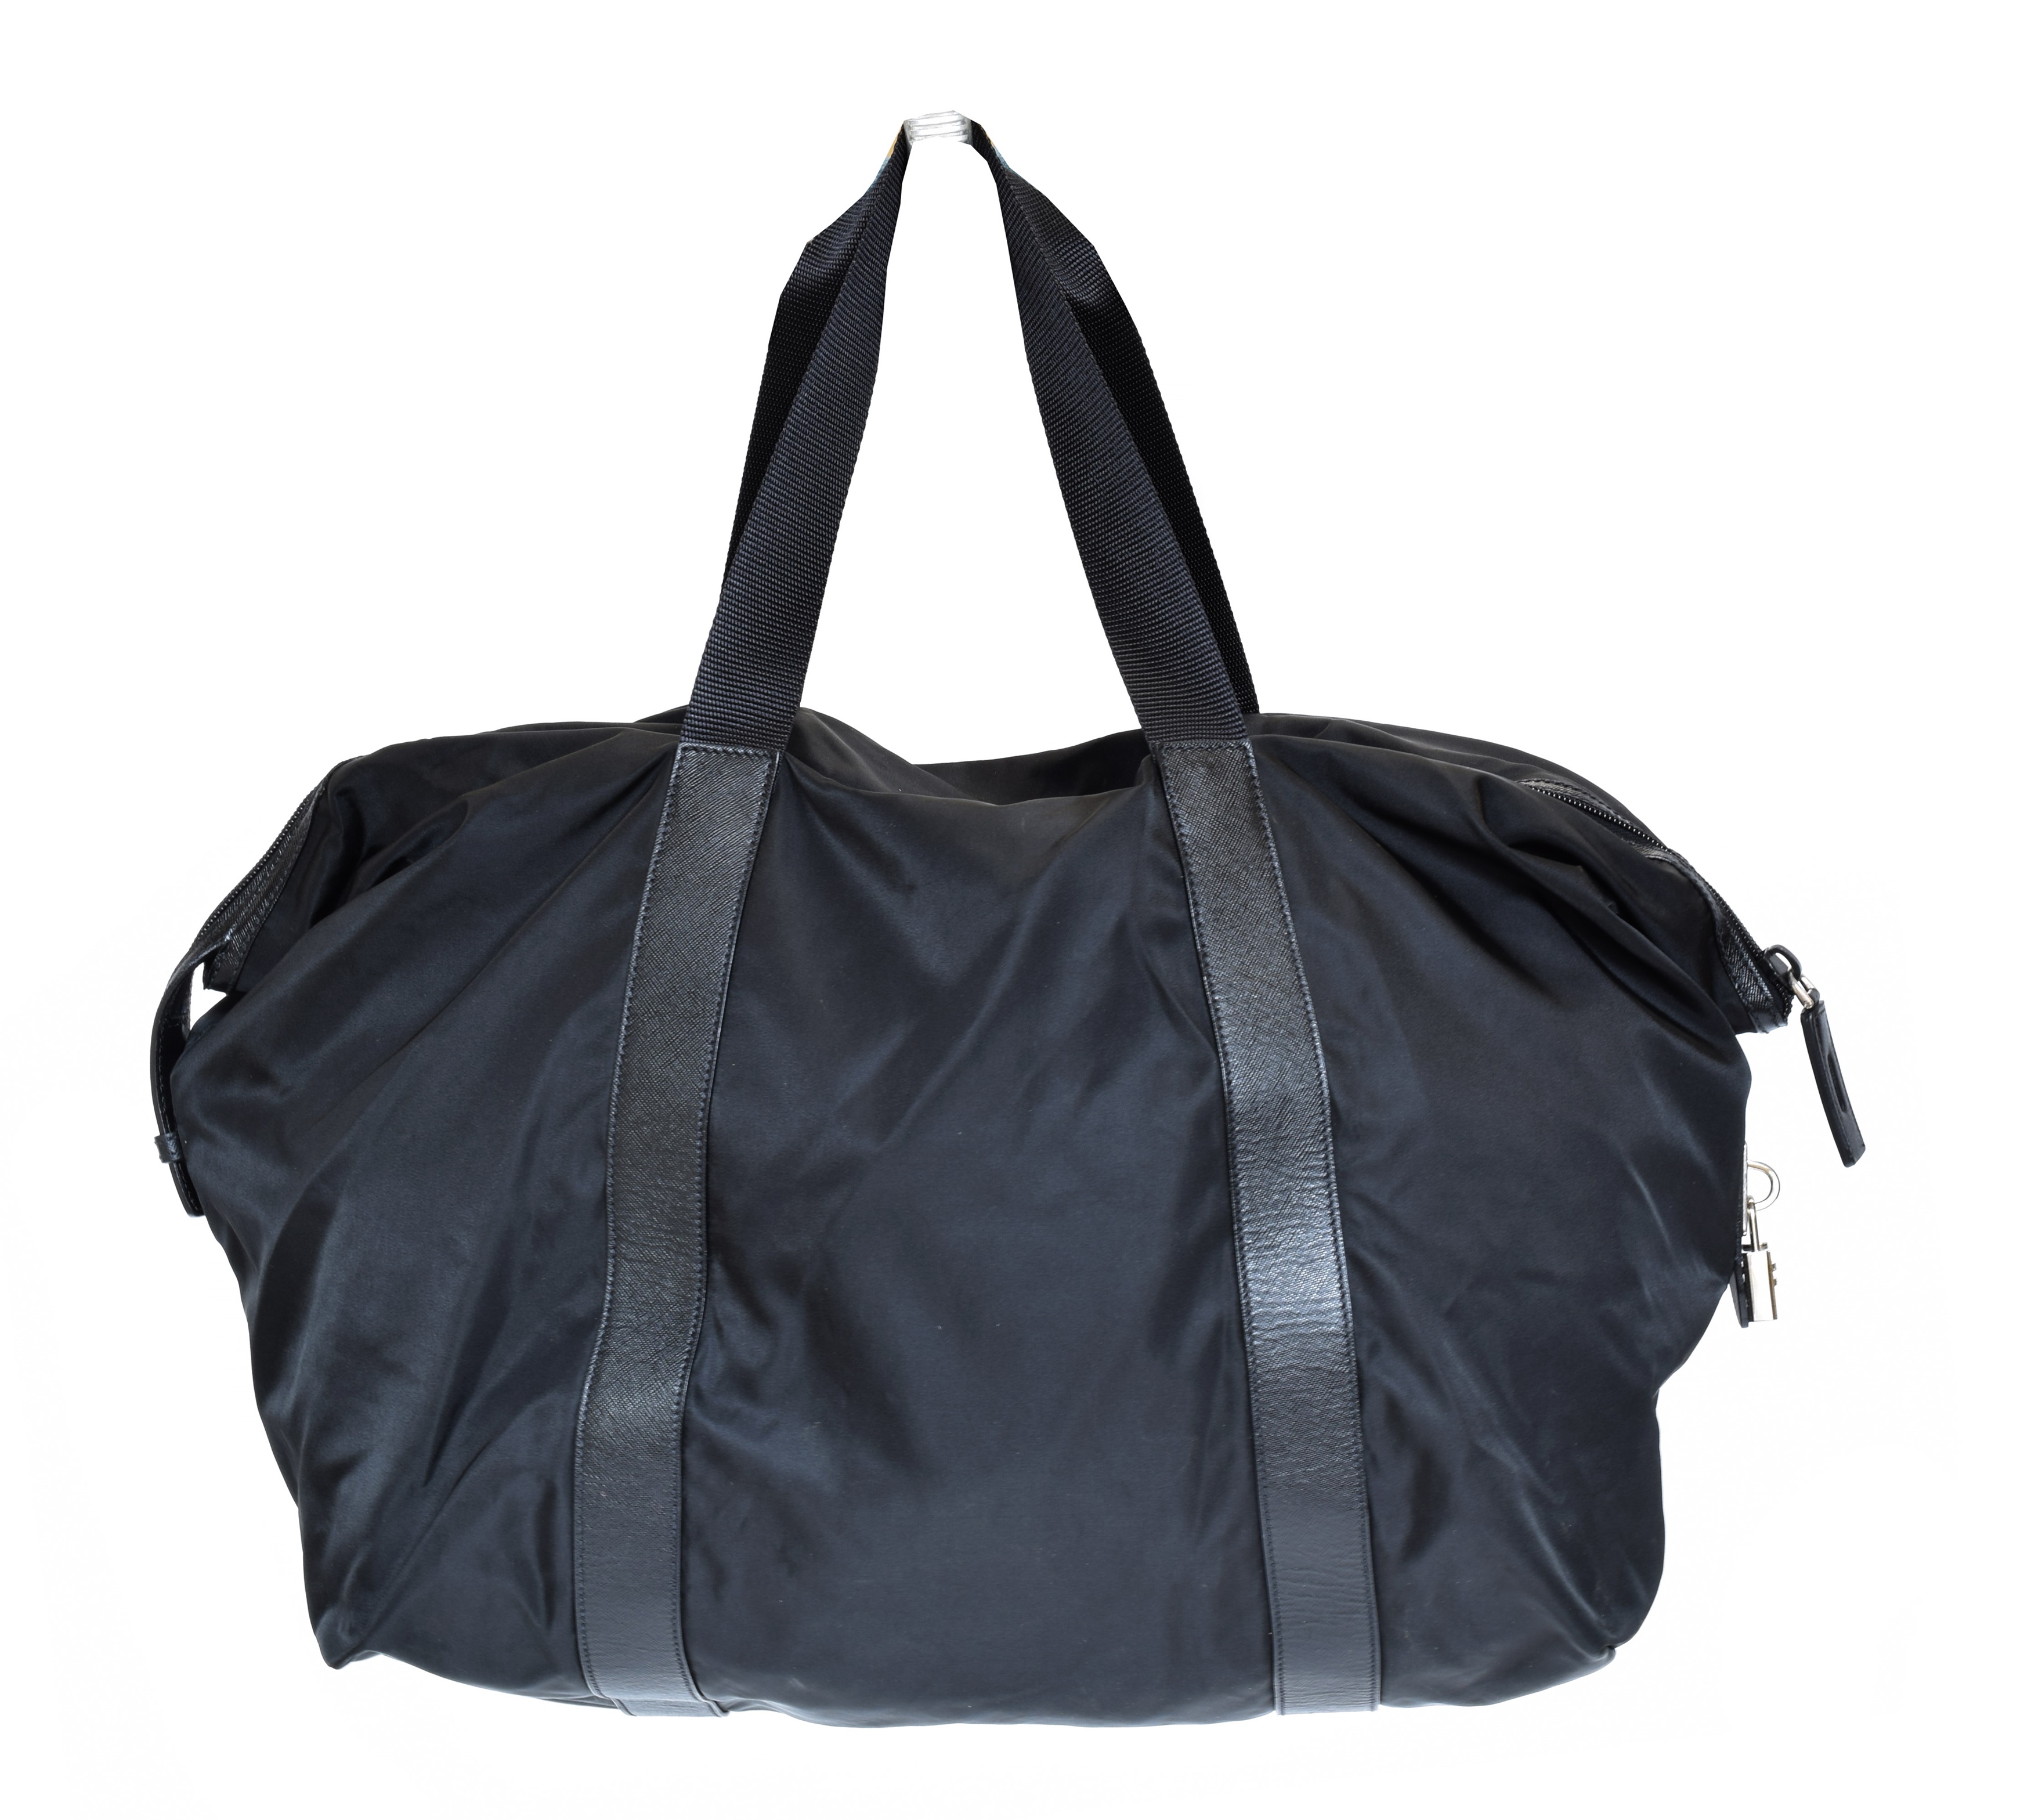 A Prada Weekender Travel Bag, - Image 2 of 2